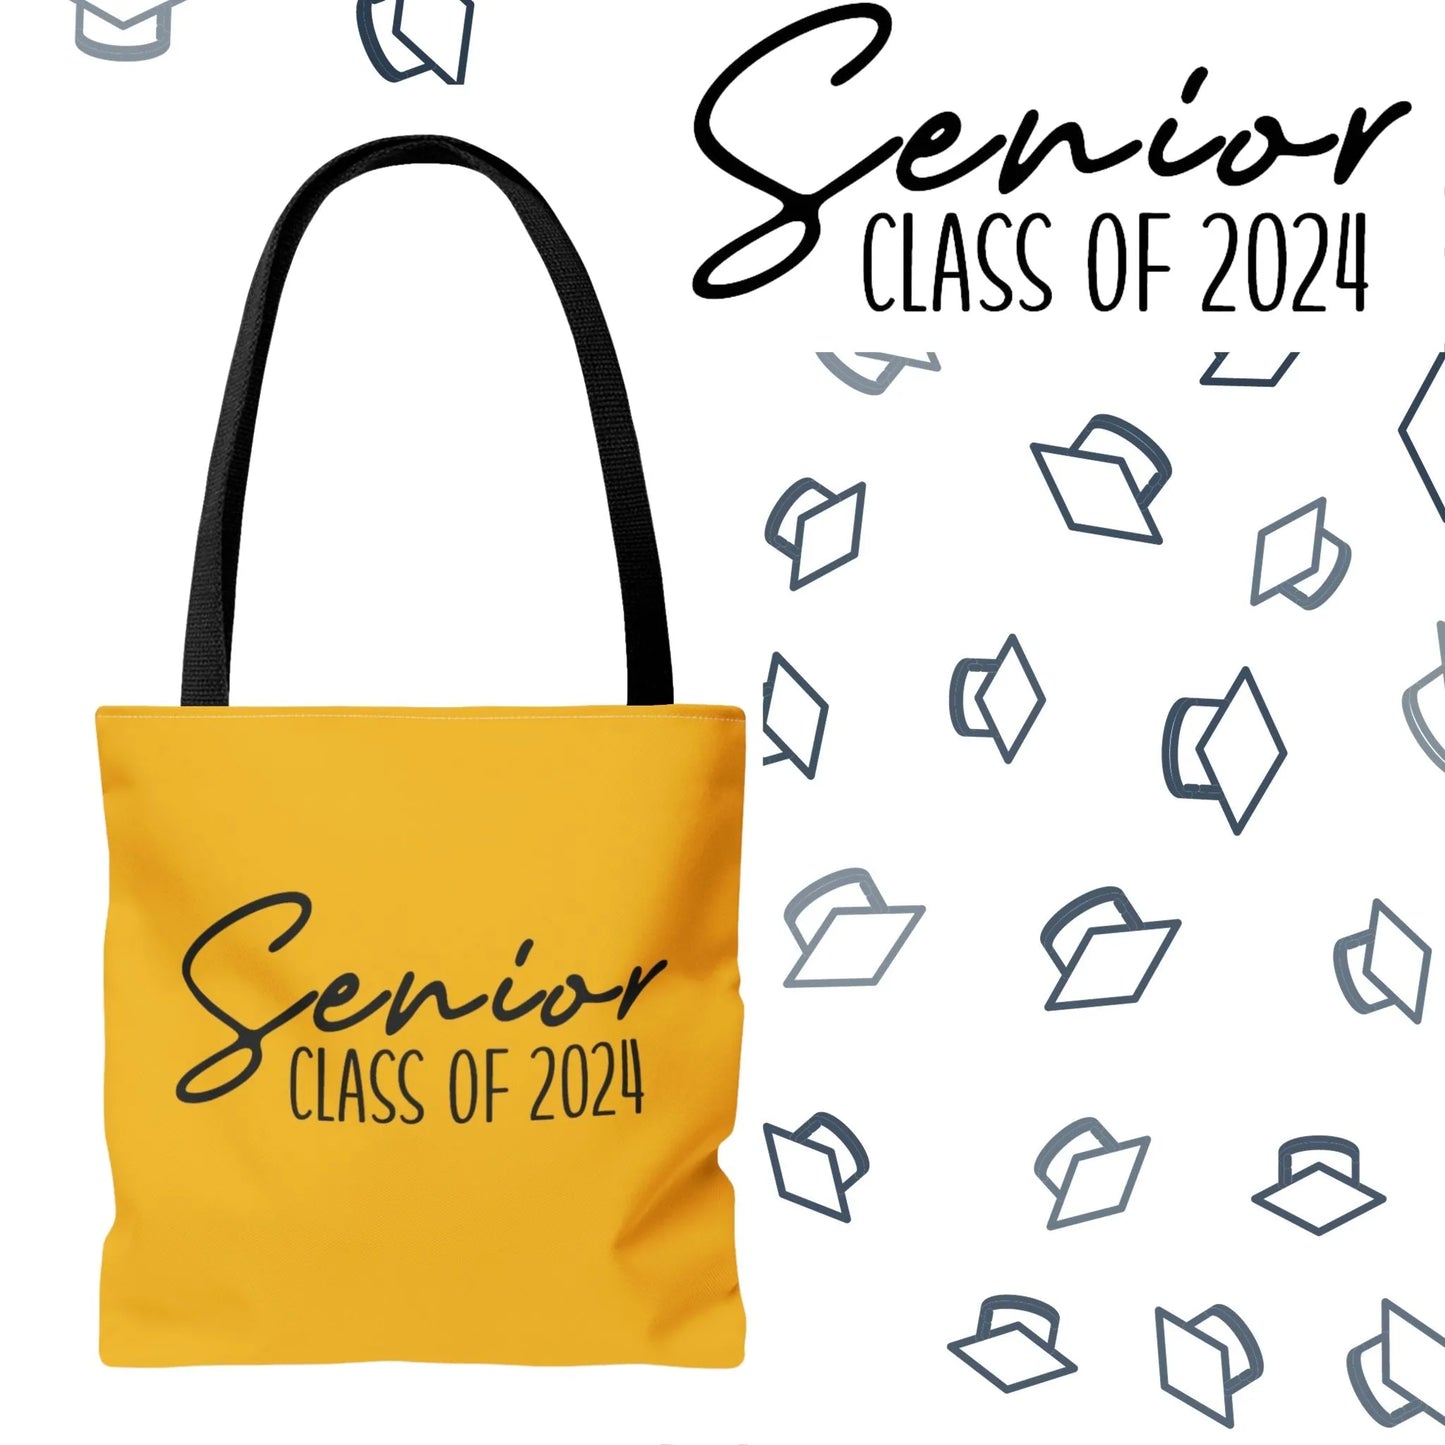 Senior Class of 2024 Tote Bag - Class of 2024 Tote Bag - Senior 2024 Tote Bag yellow